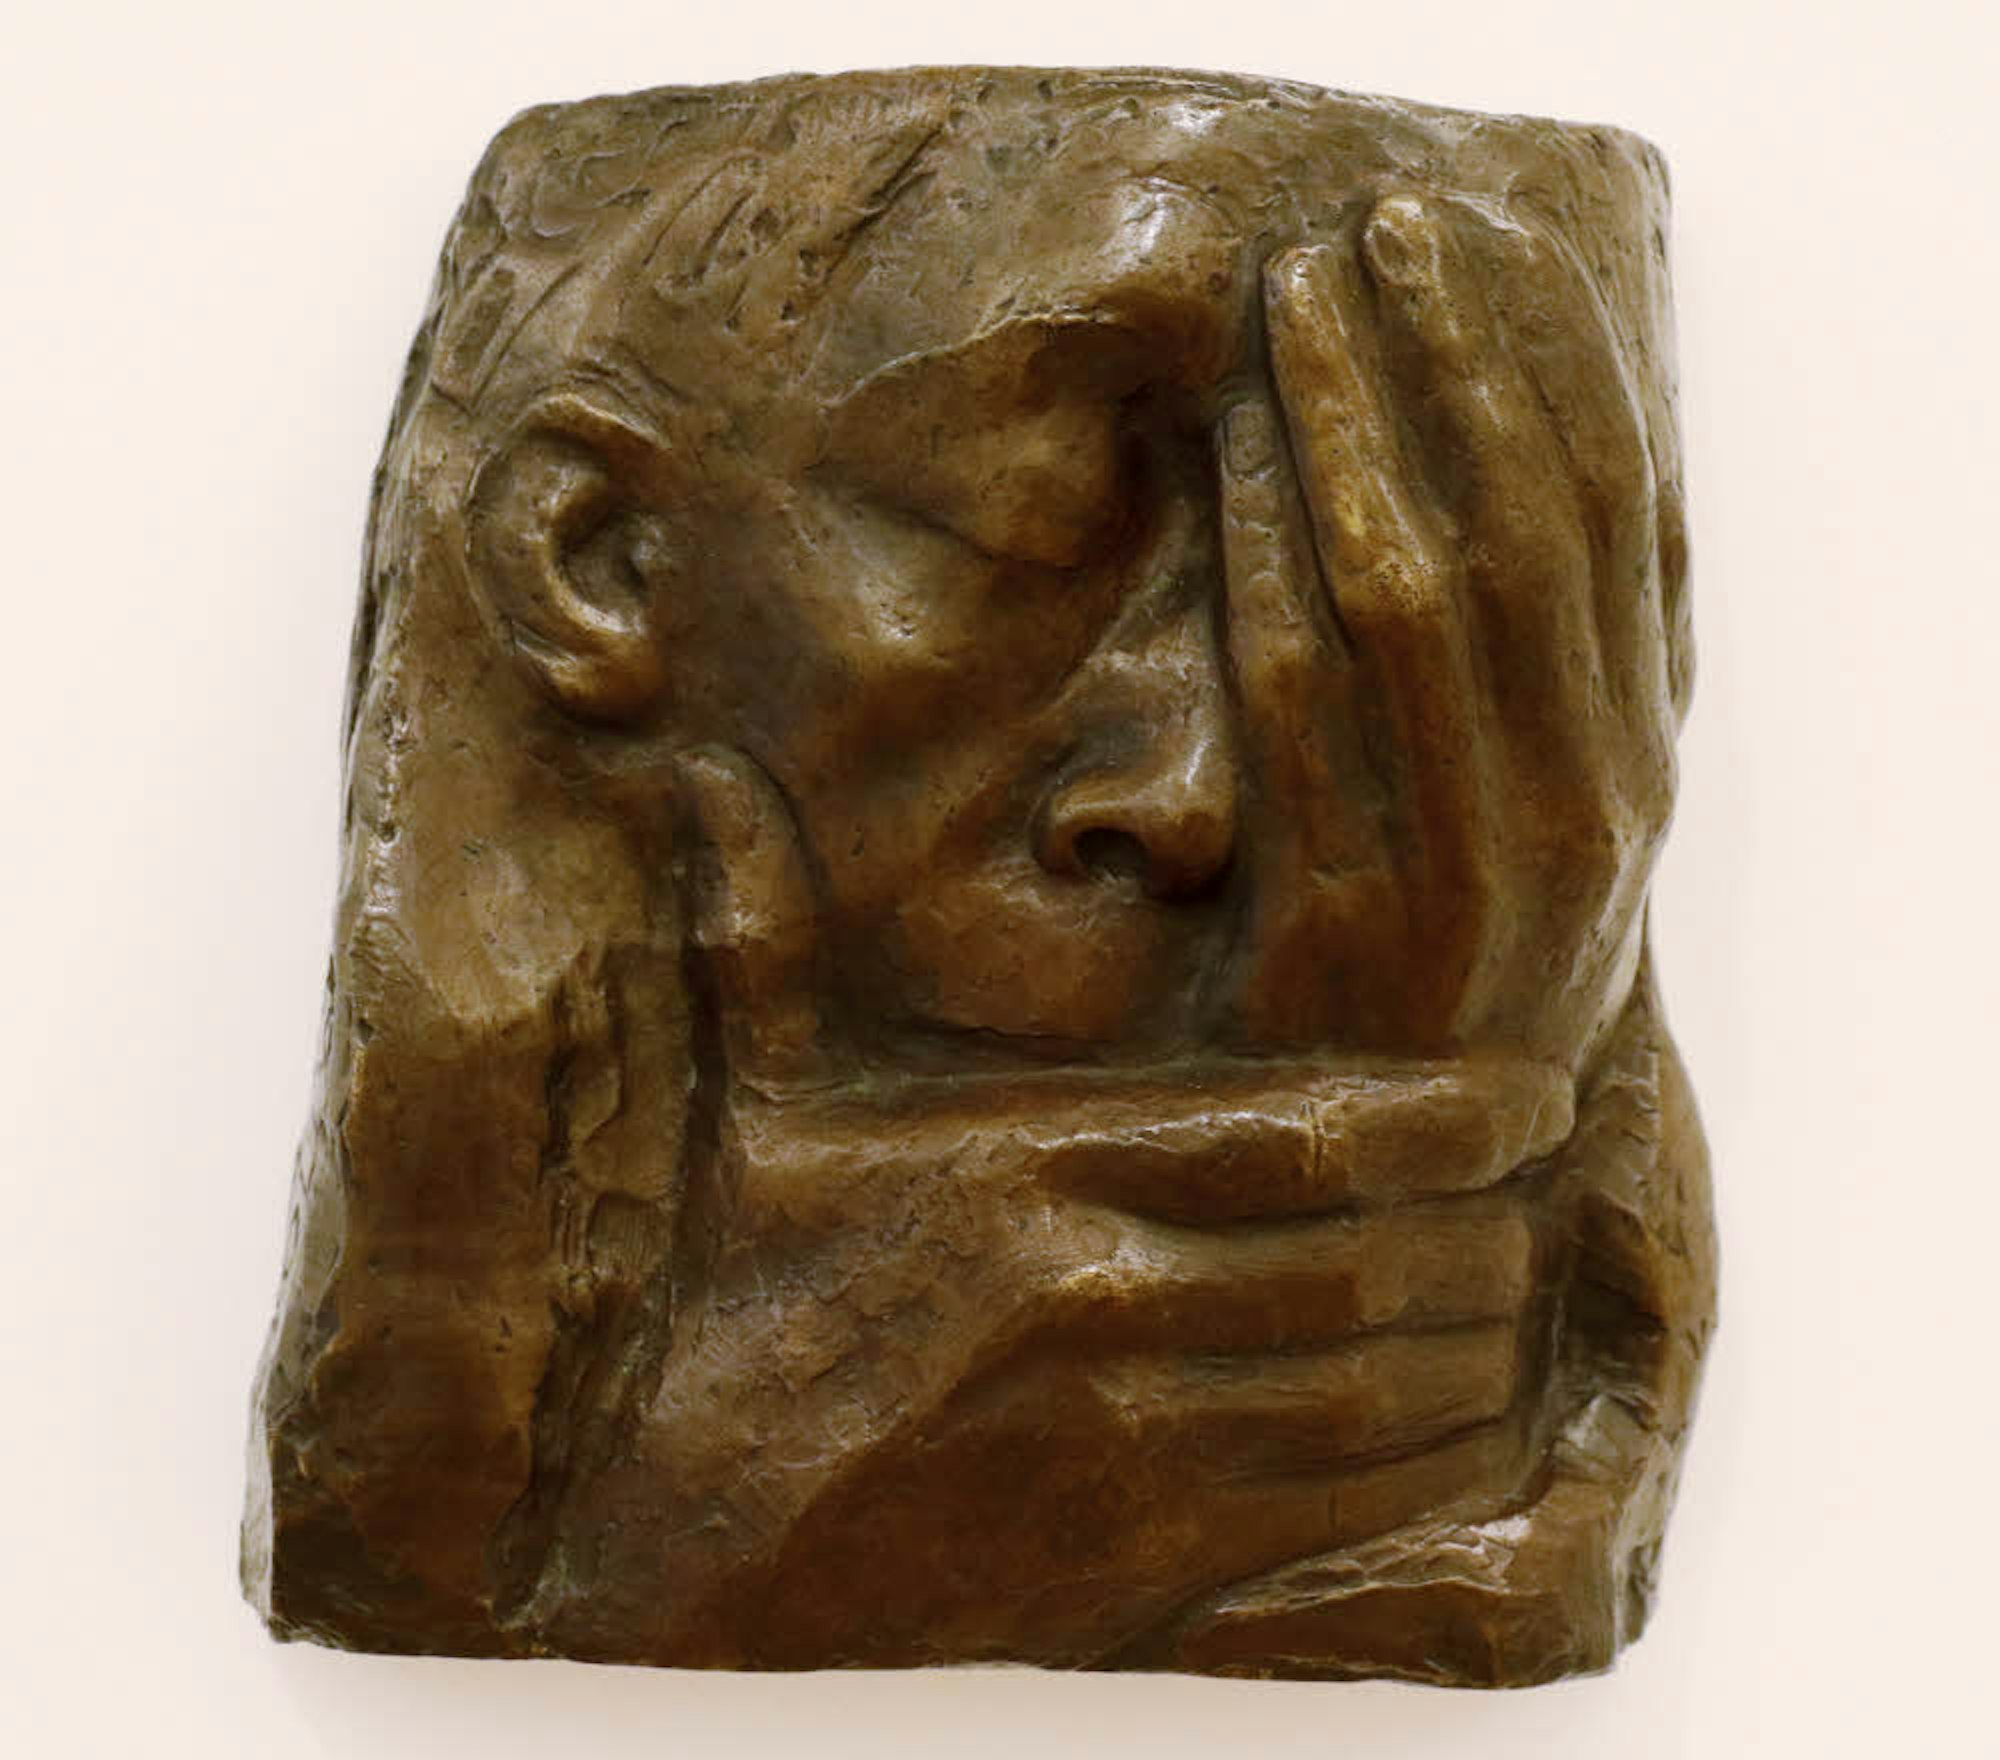 Die Hände rahmen das Gesicht: Auch als Bildhauerin war Kollwitz eine Virtuosin des Gefühls.